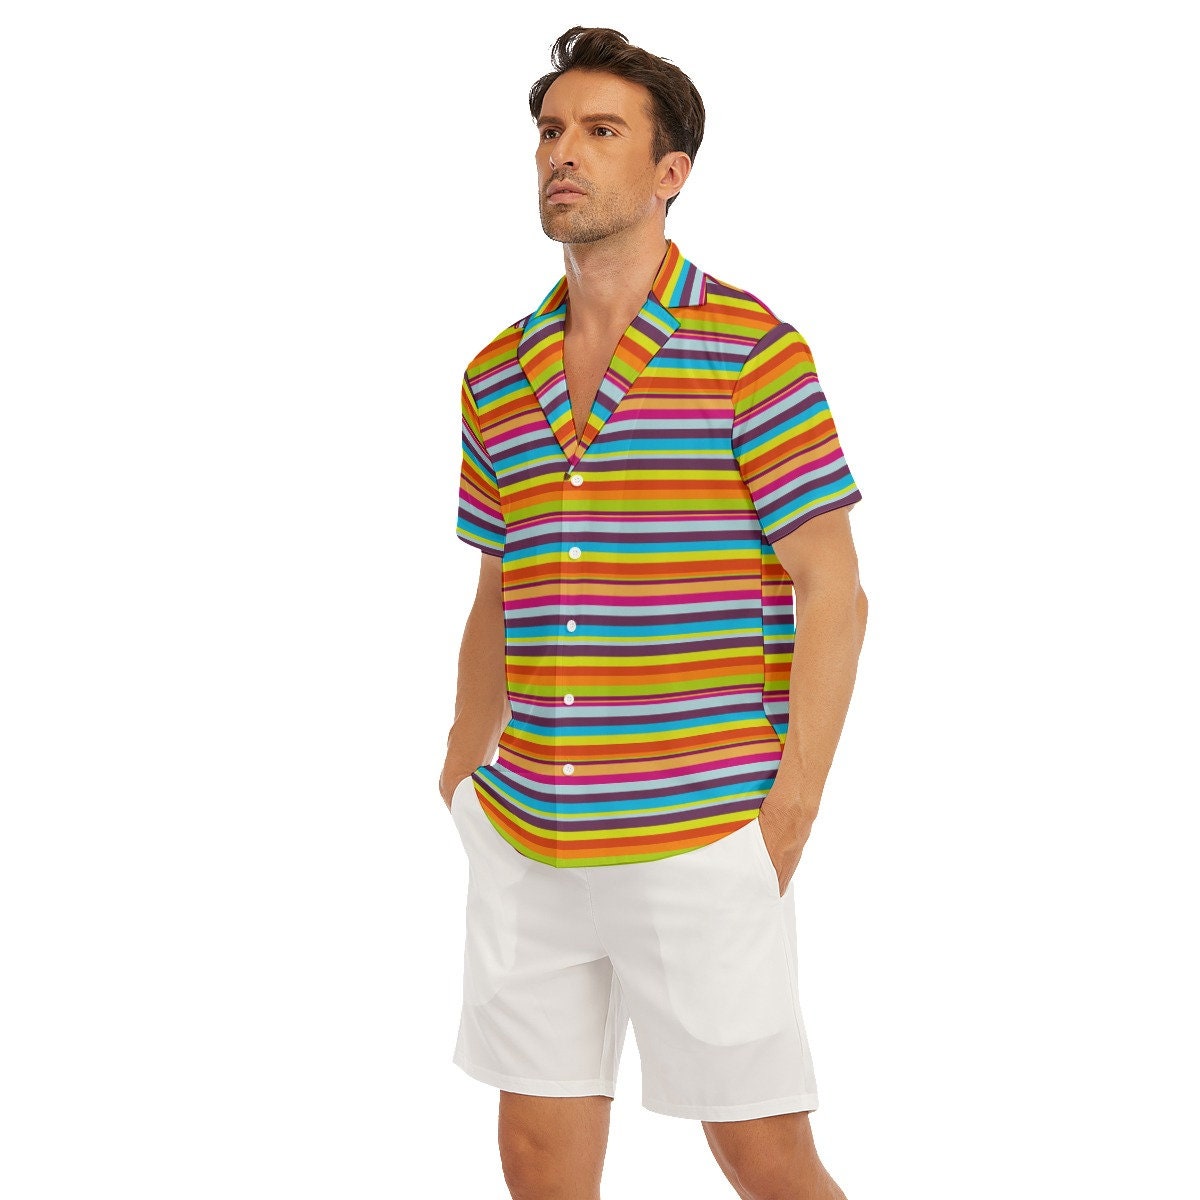 Streifenhemd Herren, Mehrfarbiges Hemd Herren, Hemd im 70er-Jahre-Stil, Hippie-Hemd, Kurzarmhemd Herren, Herrenoberteile, Regenbogenhemd, Herrenhemd